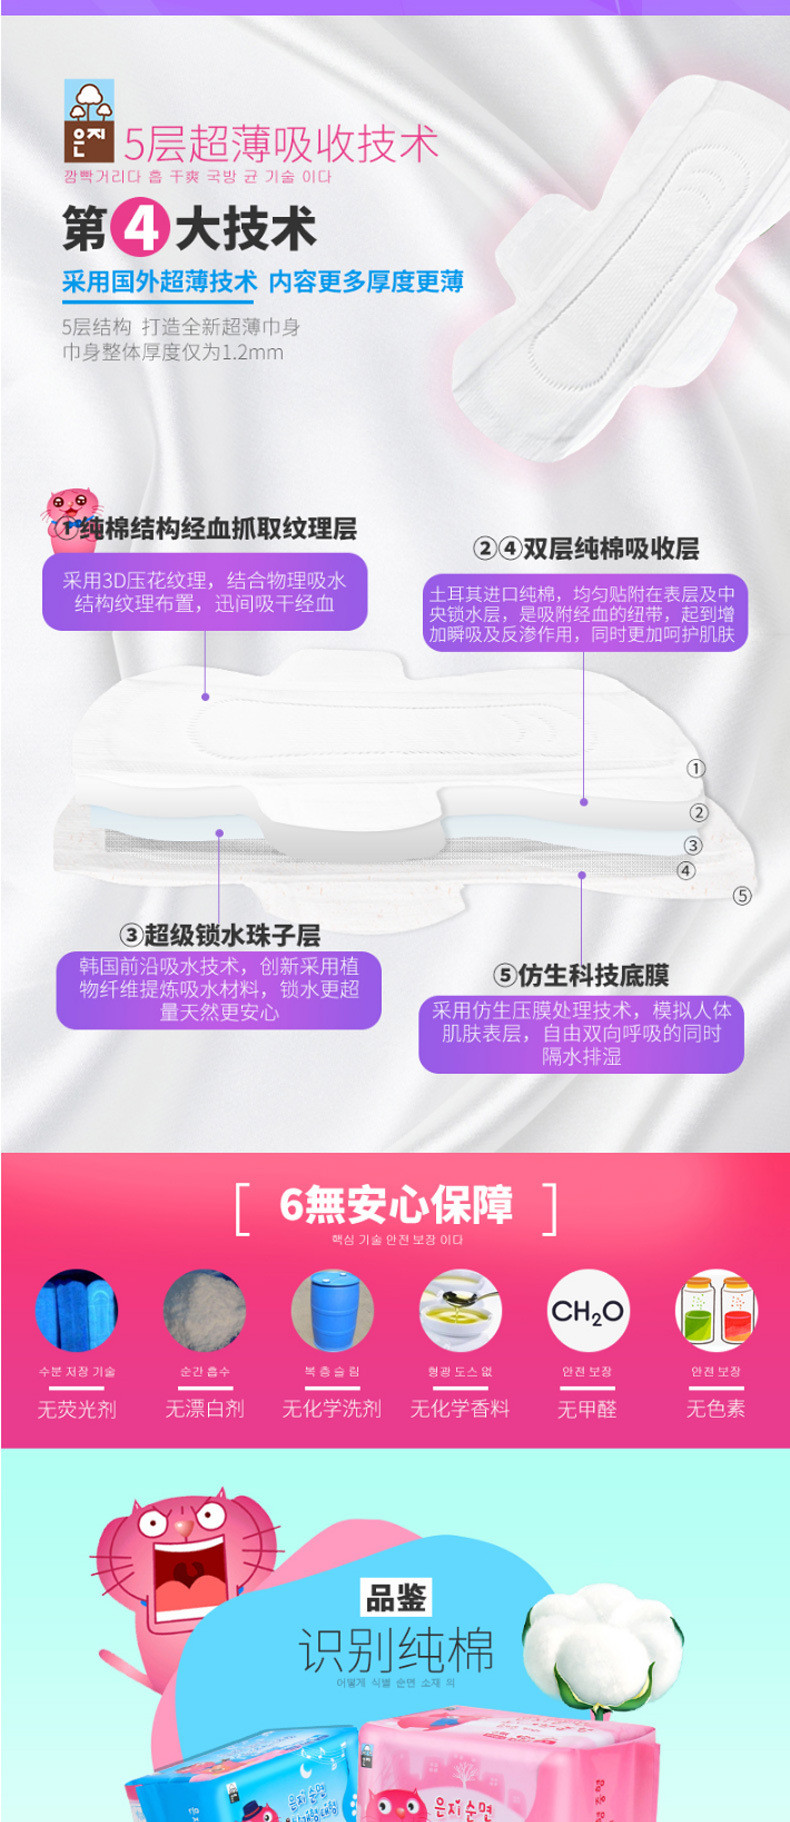 【东莞】多乐满德 韩国原装进口 猫小菲6无纤薄超长夜用卫生巾 (420mm/4P)